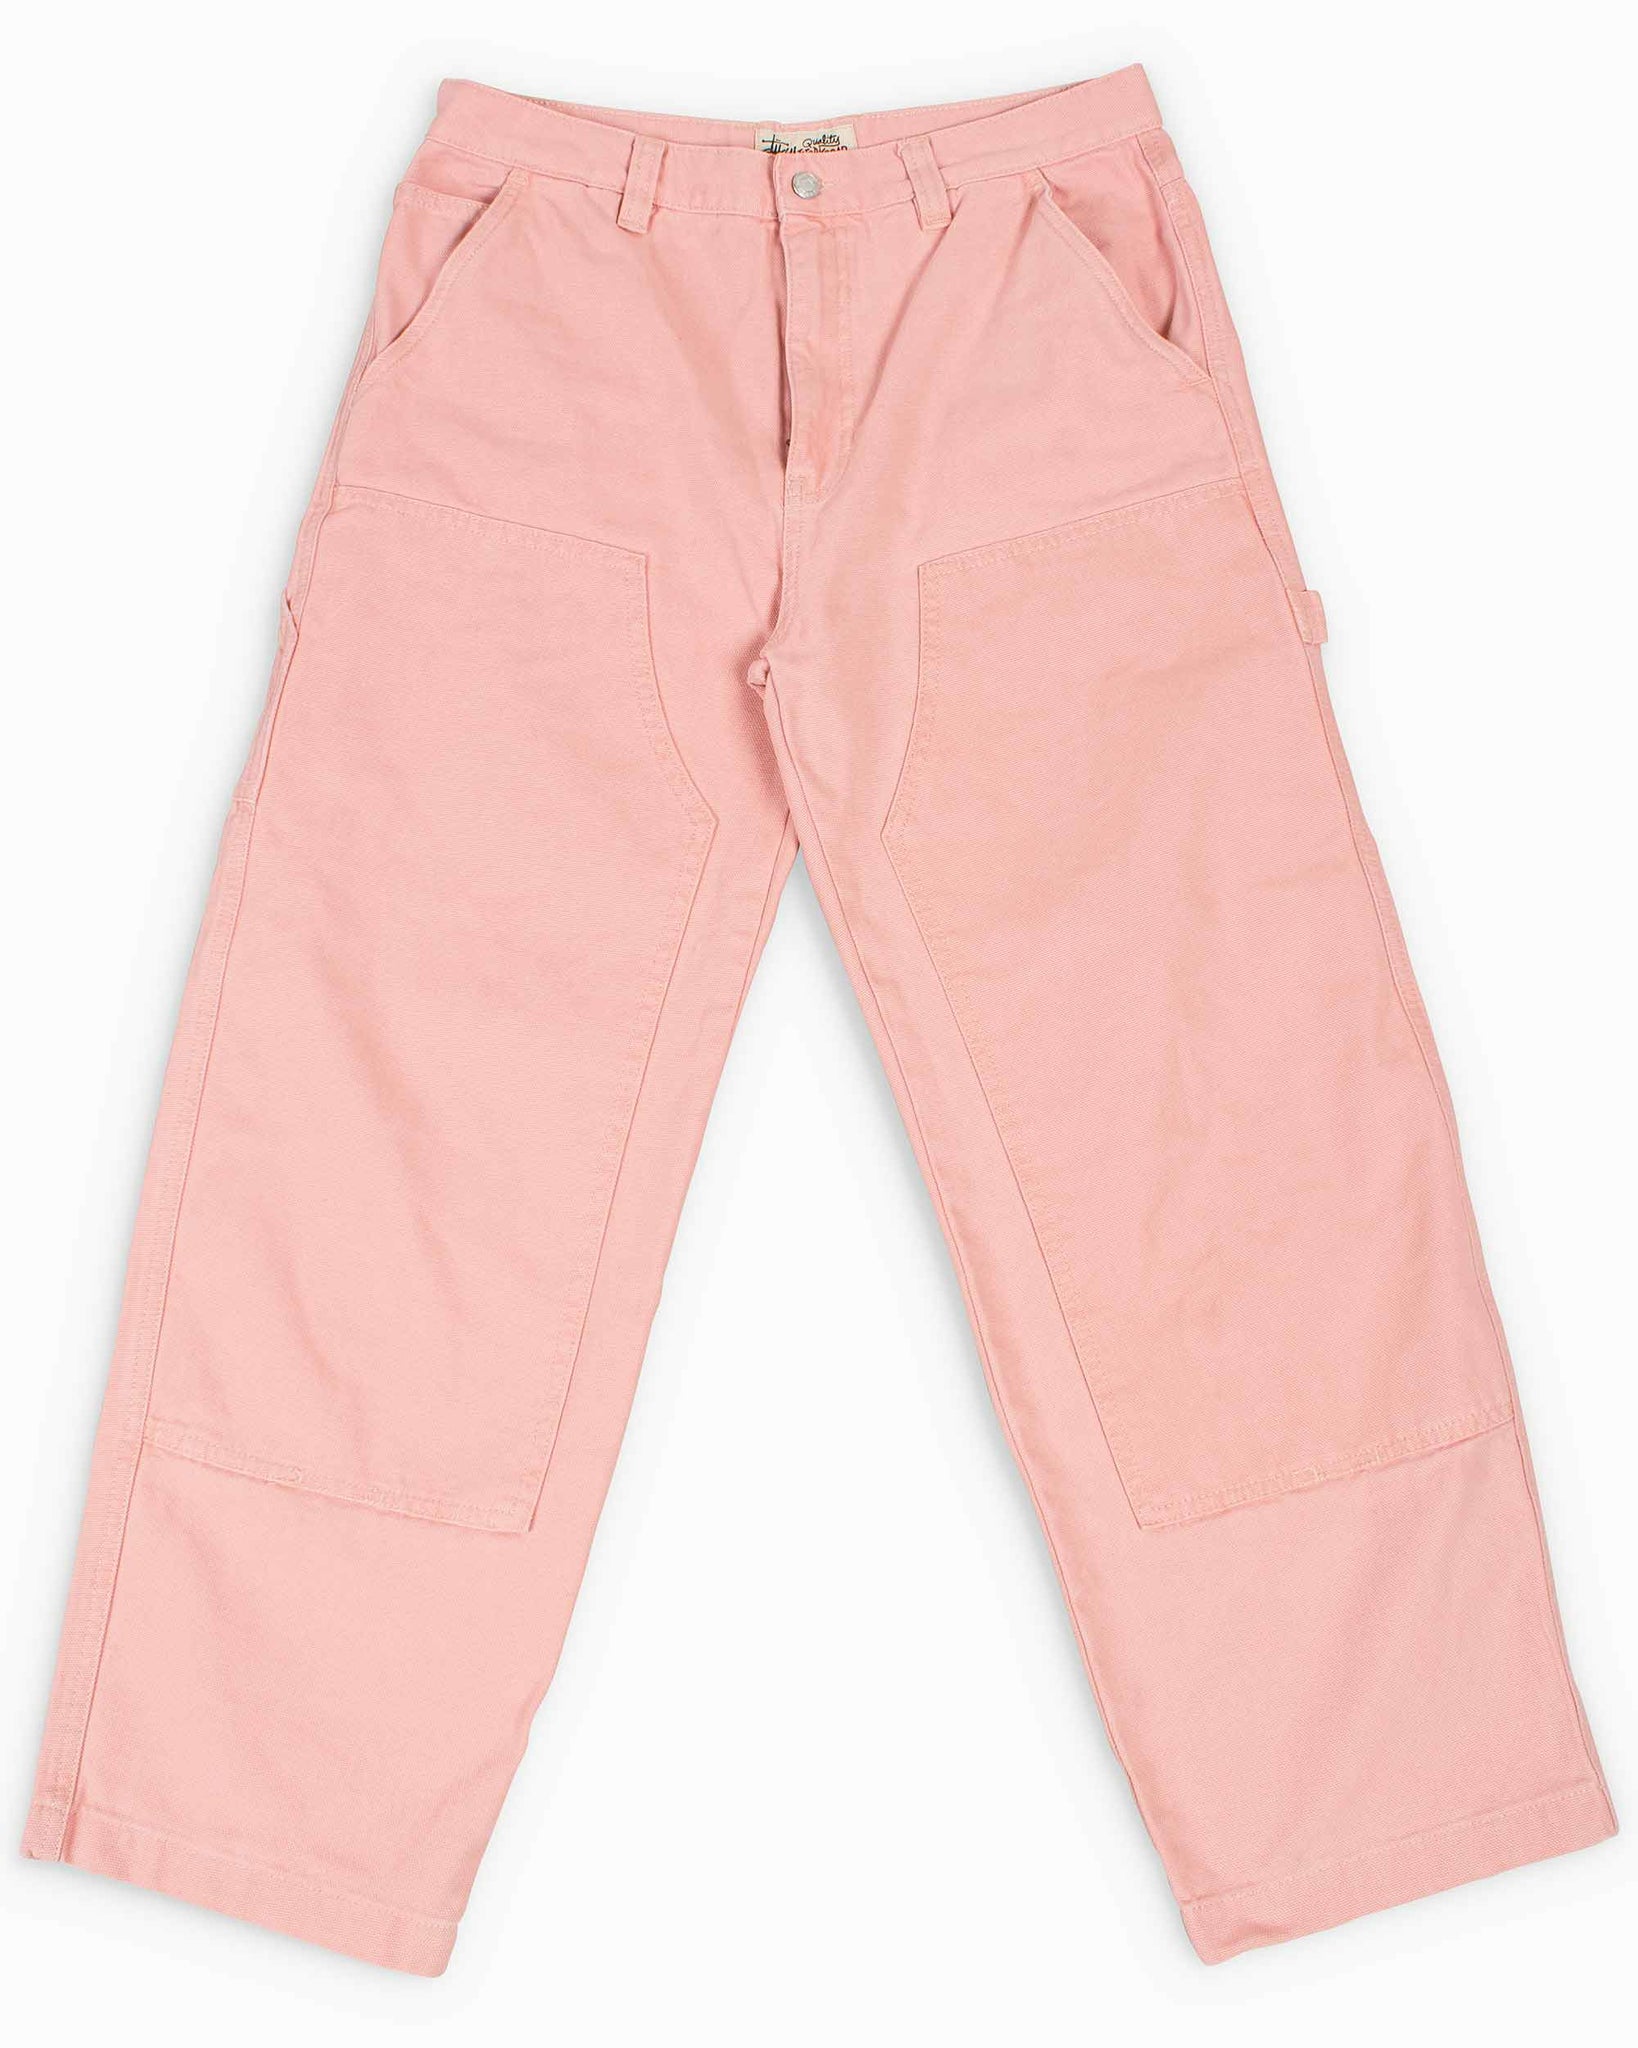 Stussy cavas work pants ピンク 34一度のみの着用です - ワークパンツ ...